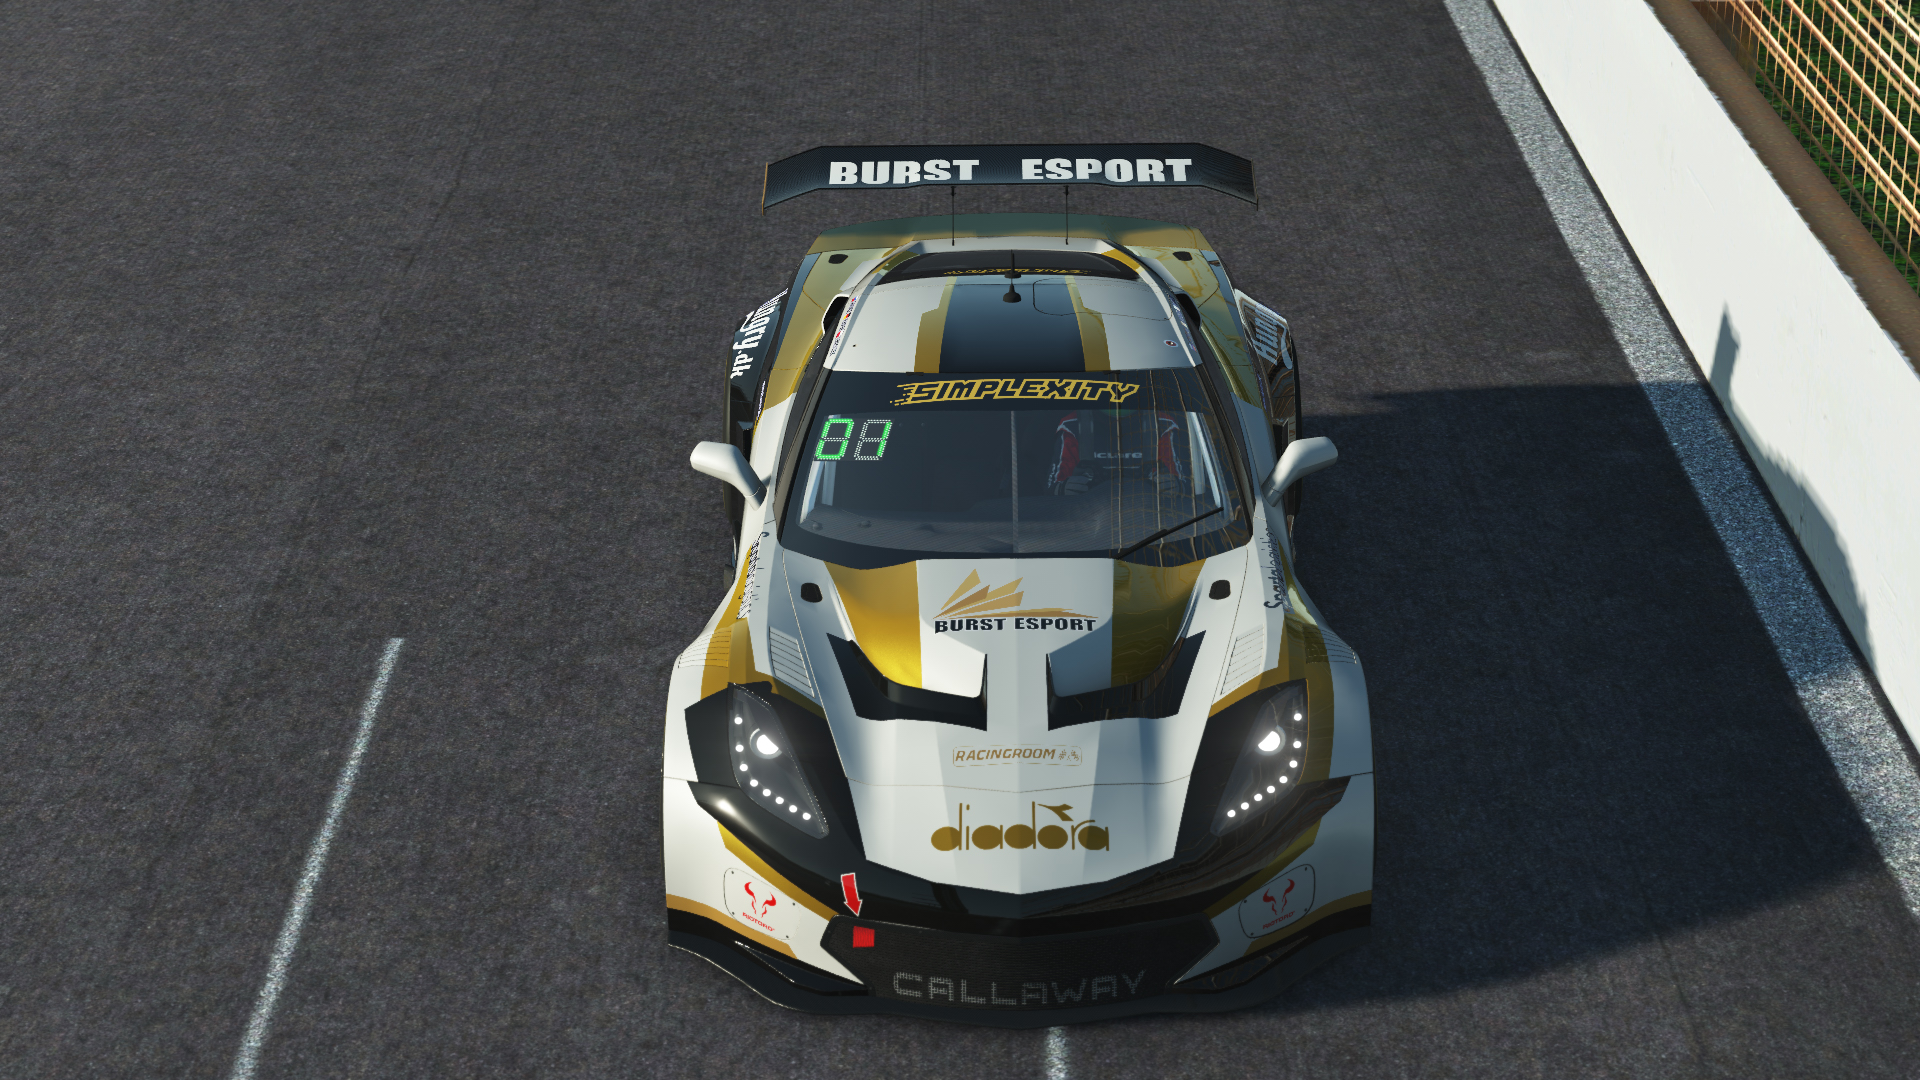 Burst Esport - GT3 Endurance round 5